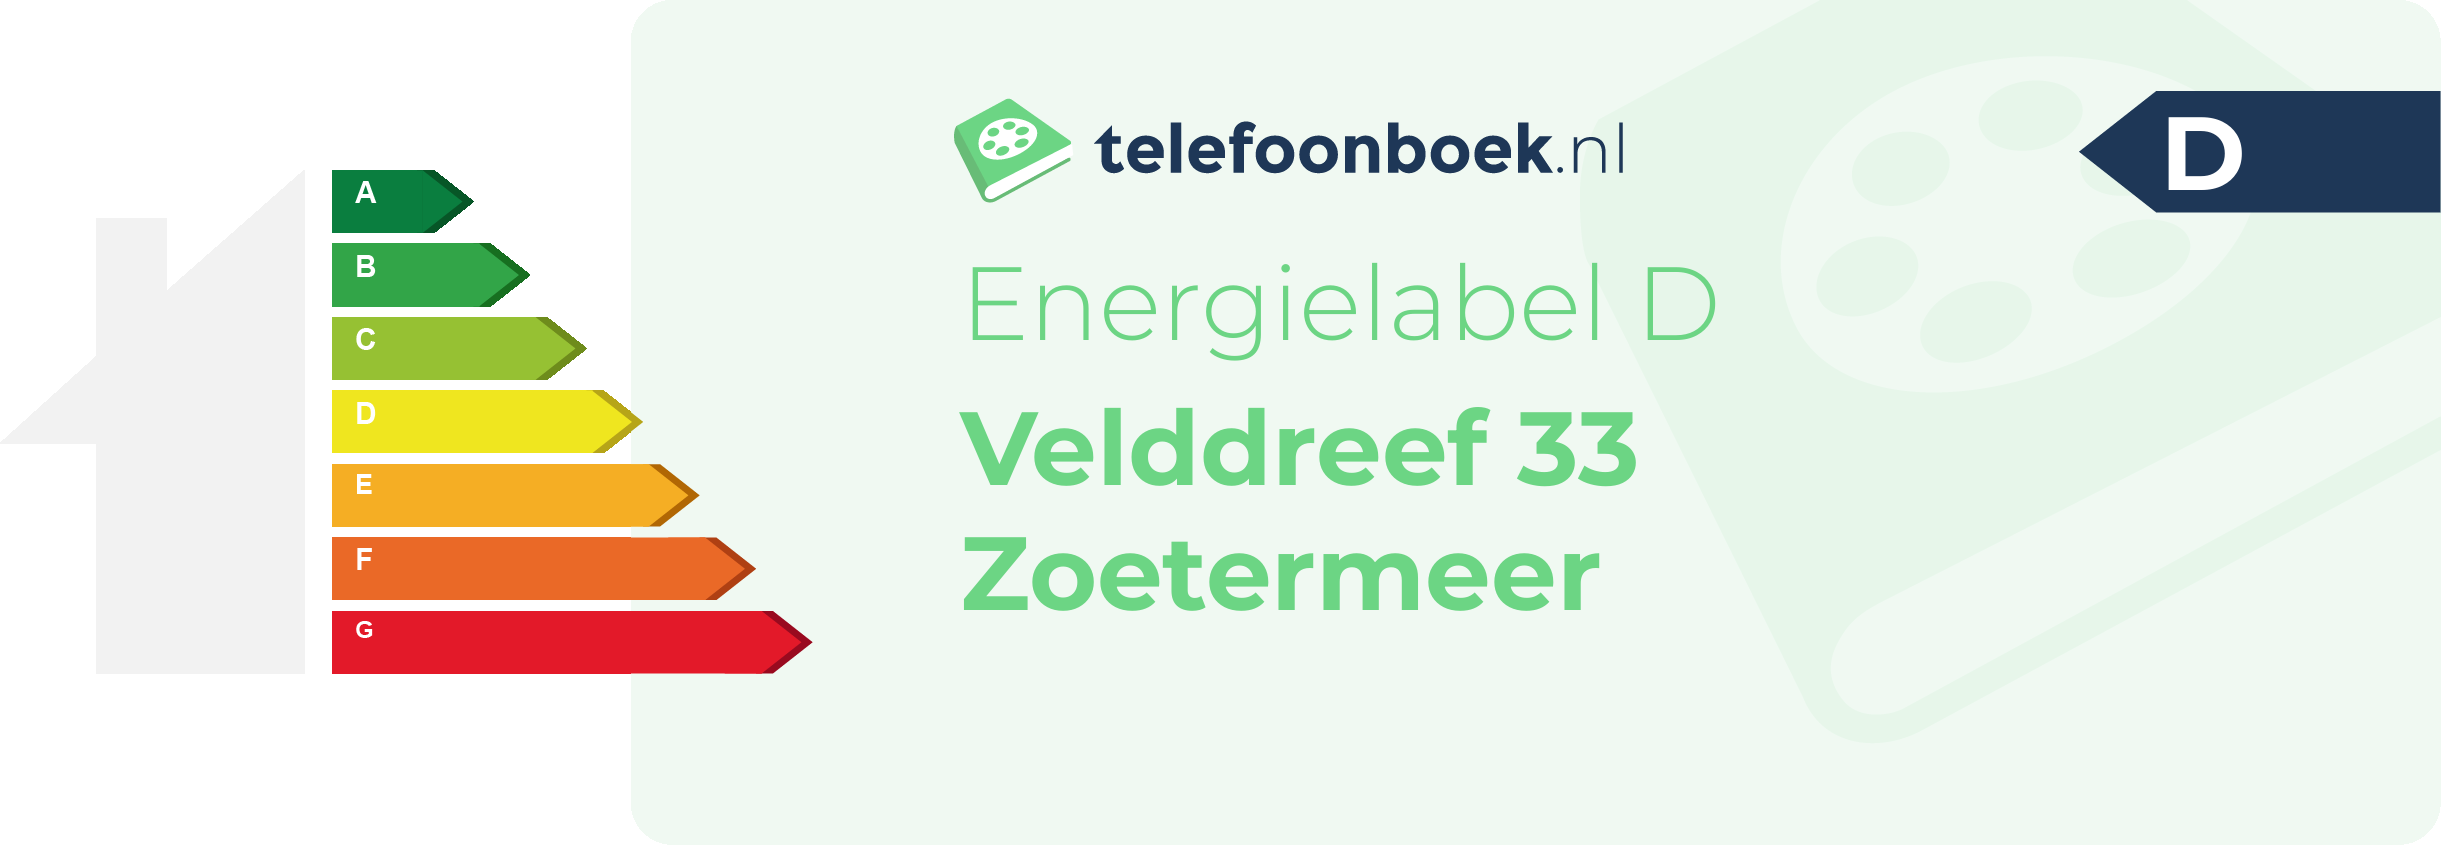 Energielabel Velddreef 33 Zoetermeer